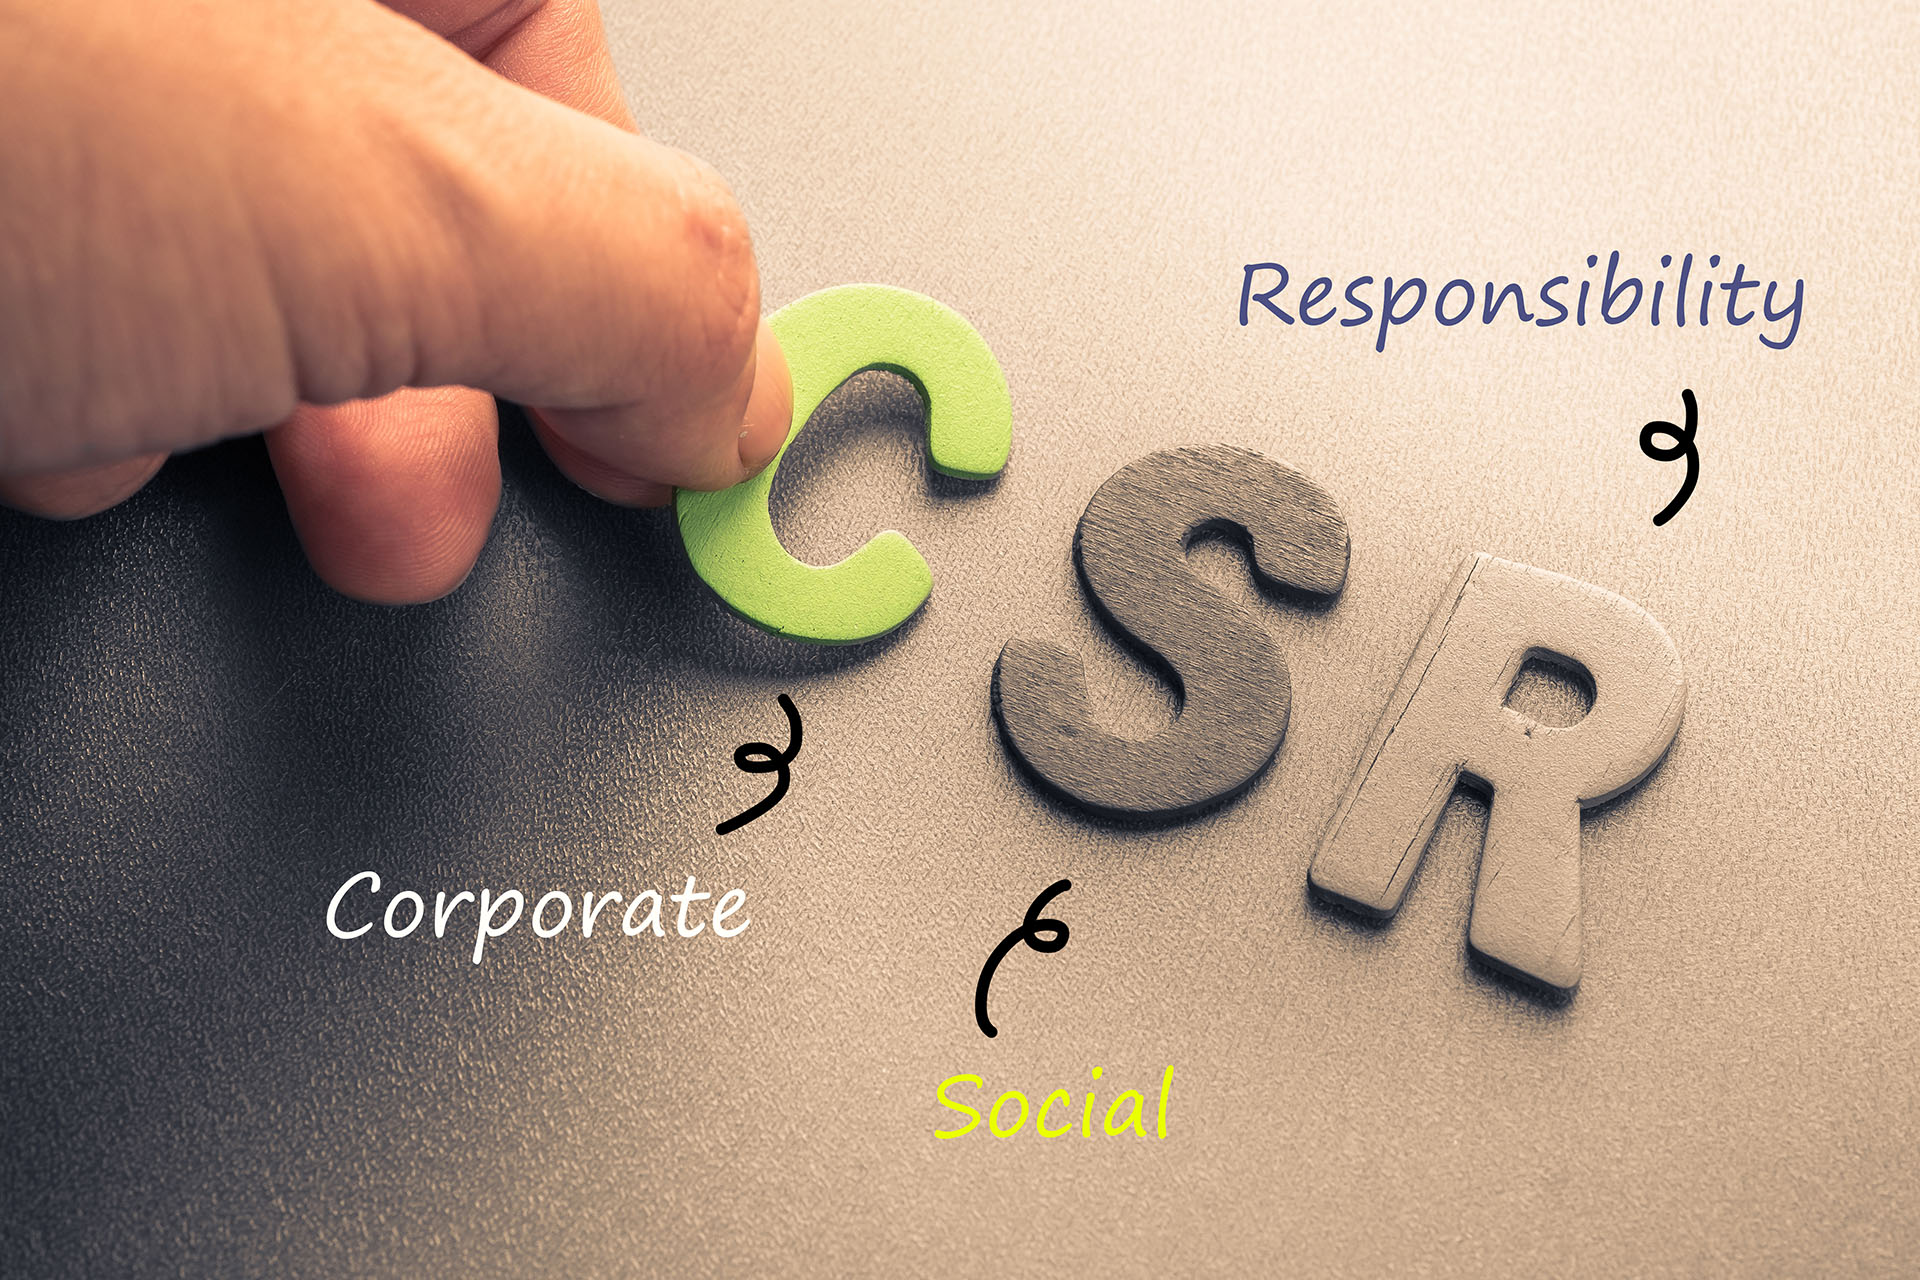 تعریف مفهومی و عملیاتی گزارشگری مسئولیت اجتماعی شرکت